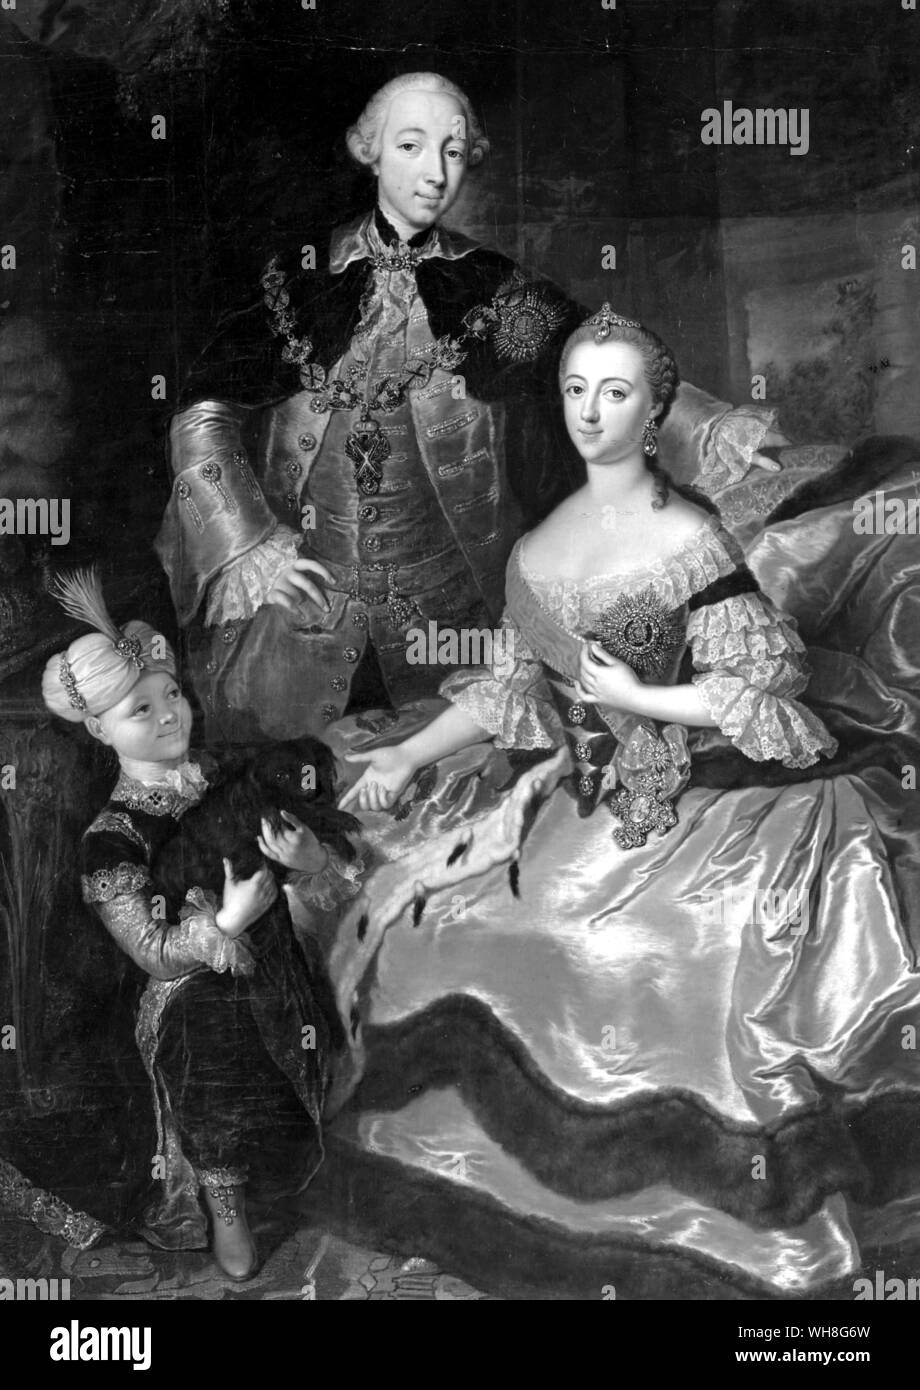 Peter III. als Thronfolger, bemalt mit Frau Katharina und Paul. Großherzog Peter Fedorovich (1728-1762), wurde Peter III., Kaiser von Rußland, 1762. Die romanows durch Virginia Cowles, Seite 82. Stockfoto